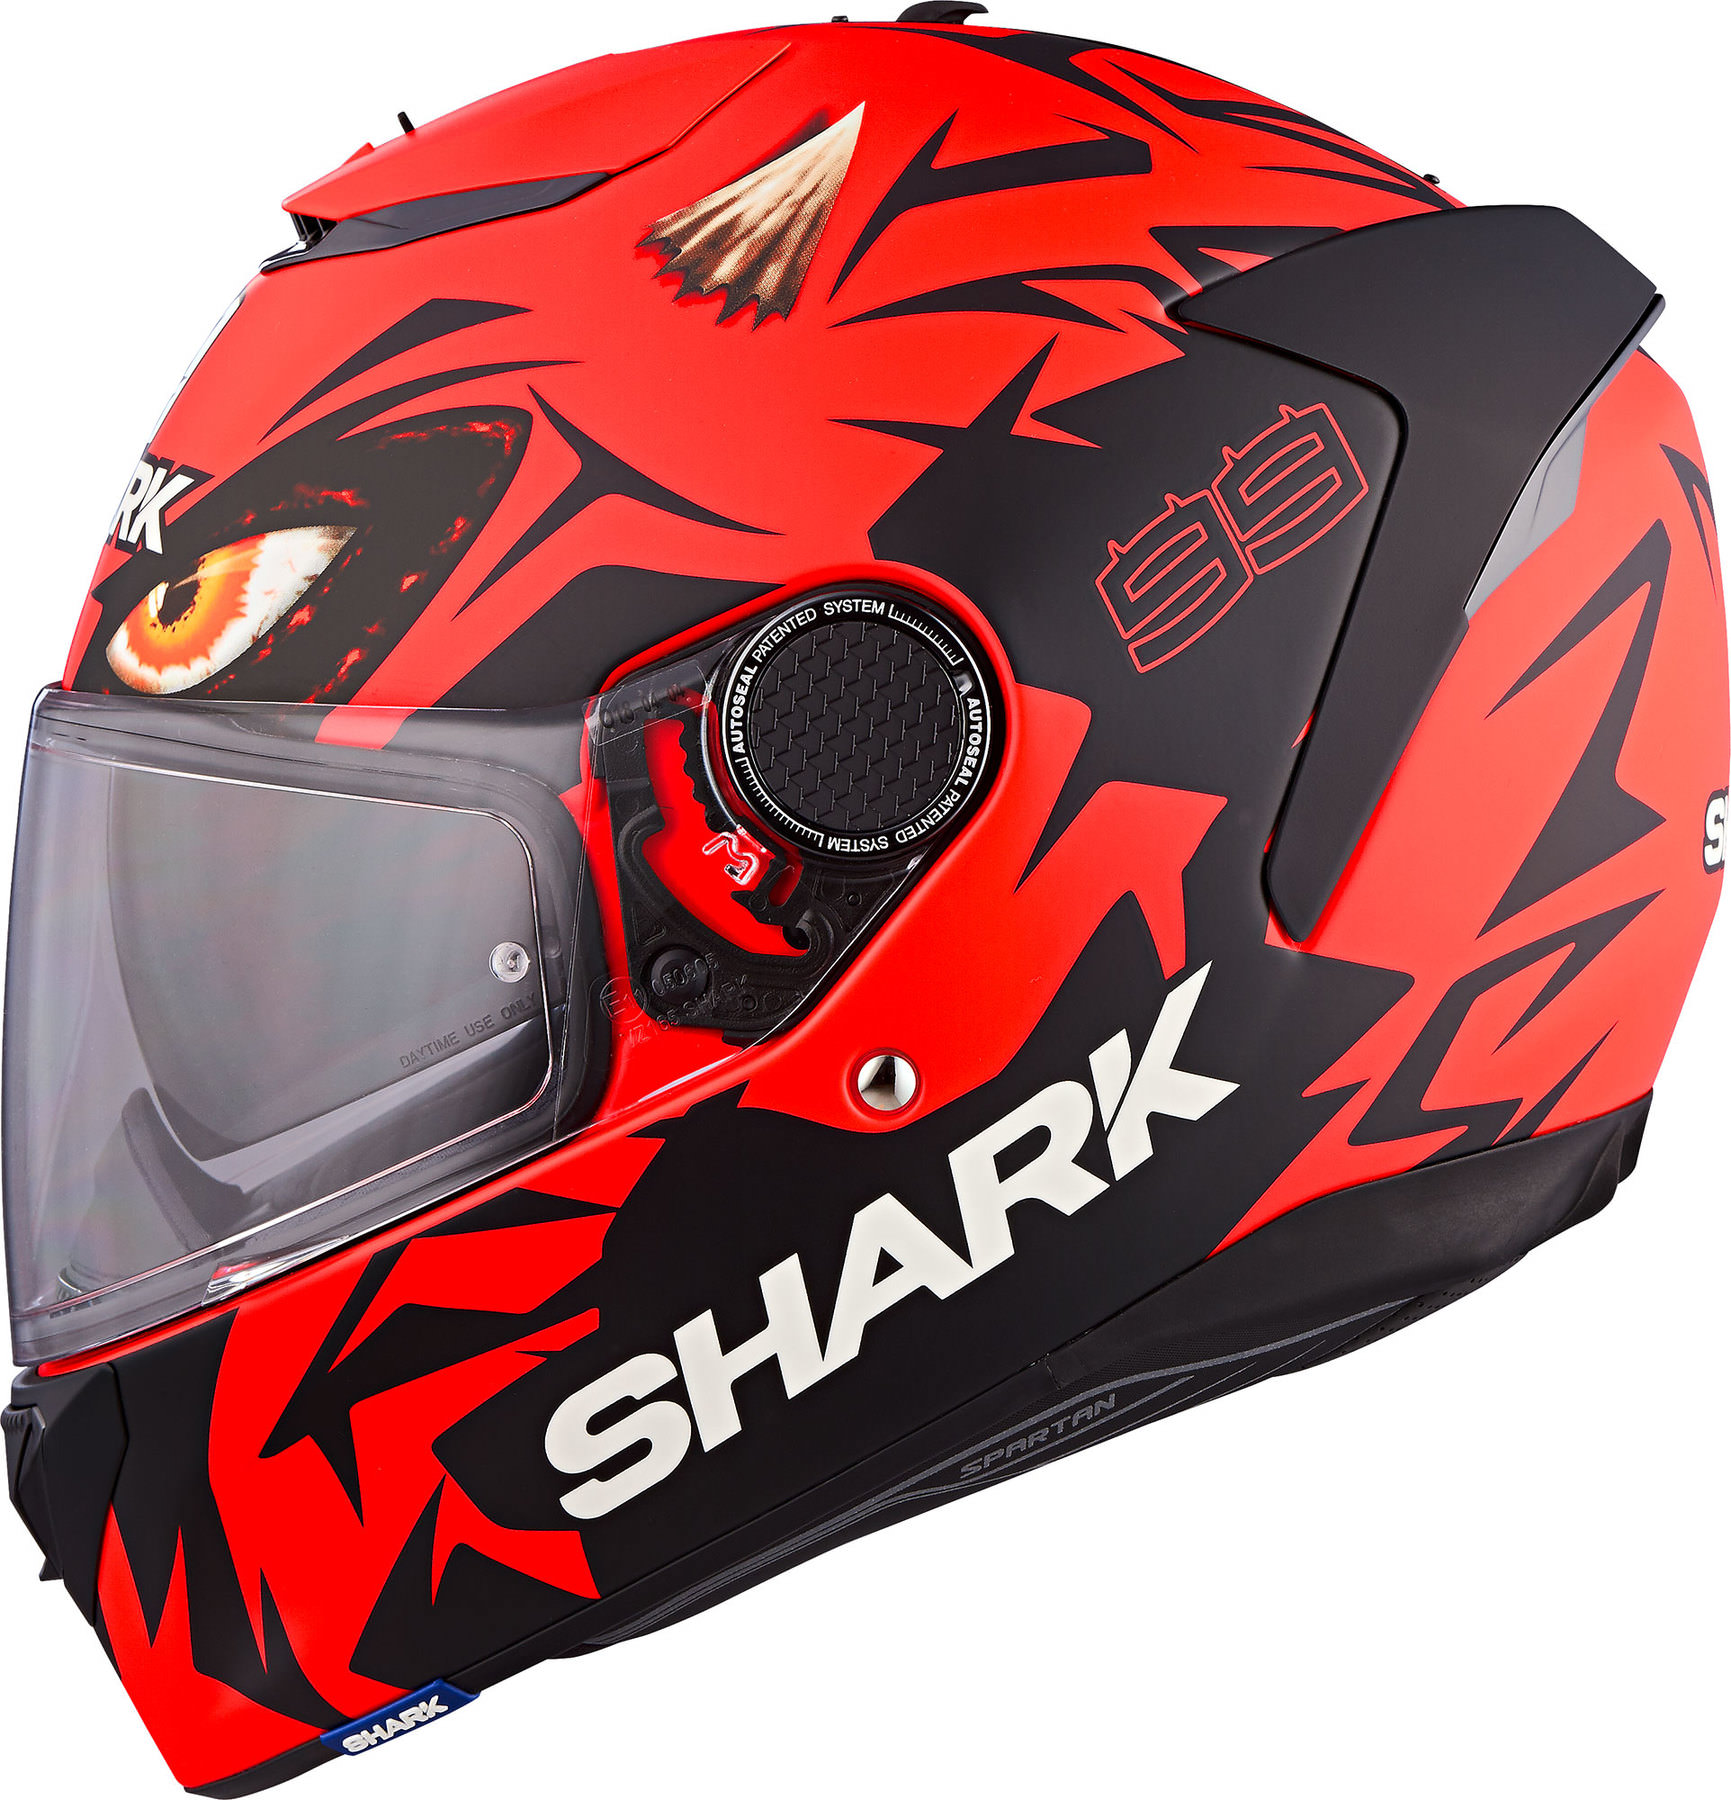 Shark Unisex Spartan Gt Replikan Motorrad Helm